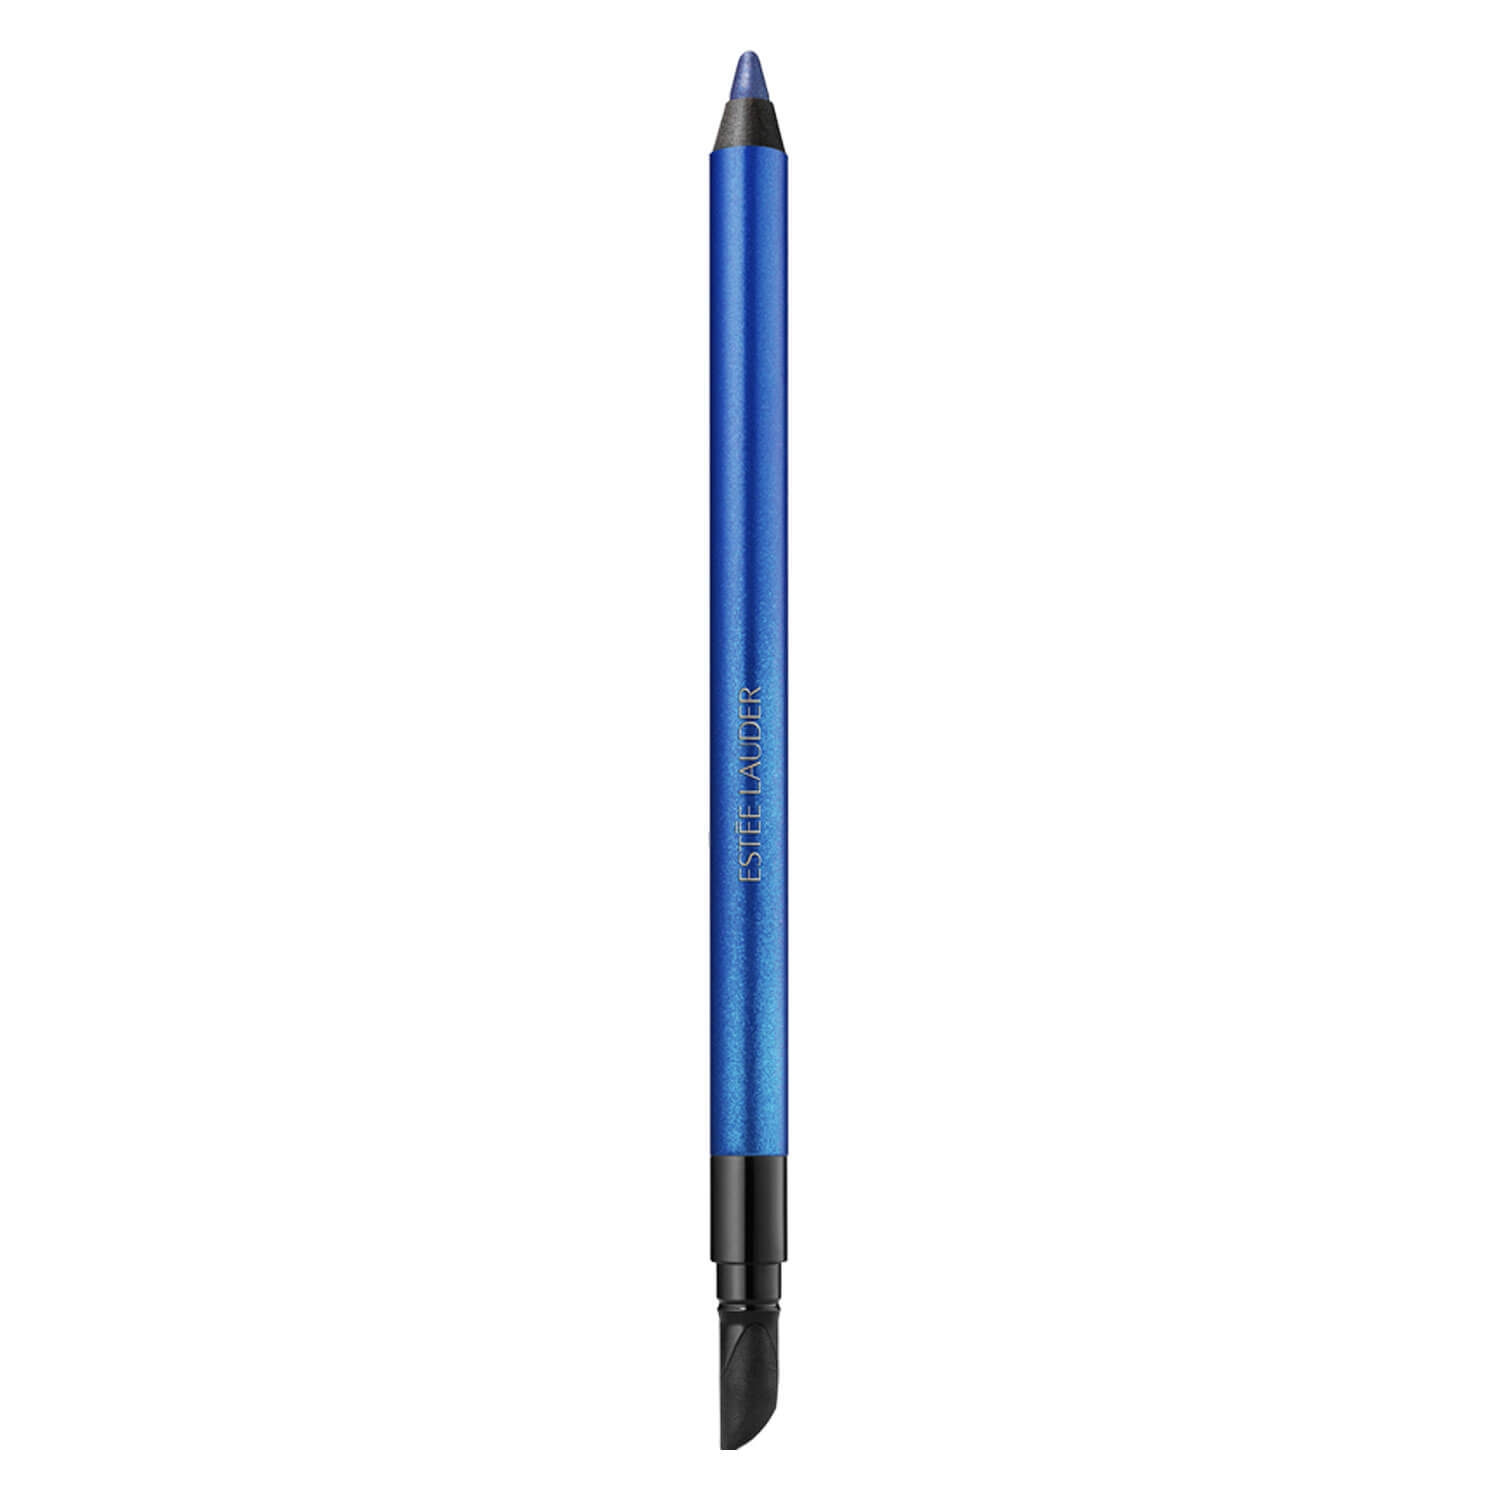 Produktbild von Double Wear - 24H Waterproof Gel Eye Pencil Saphire Sky